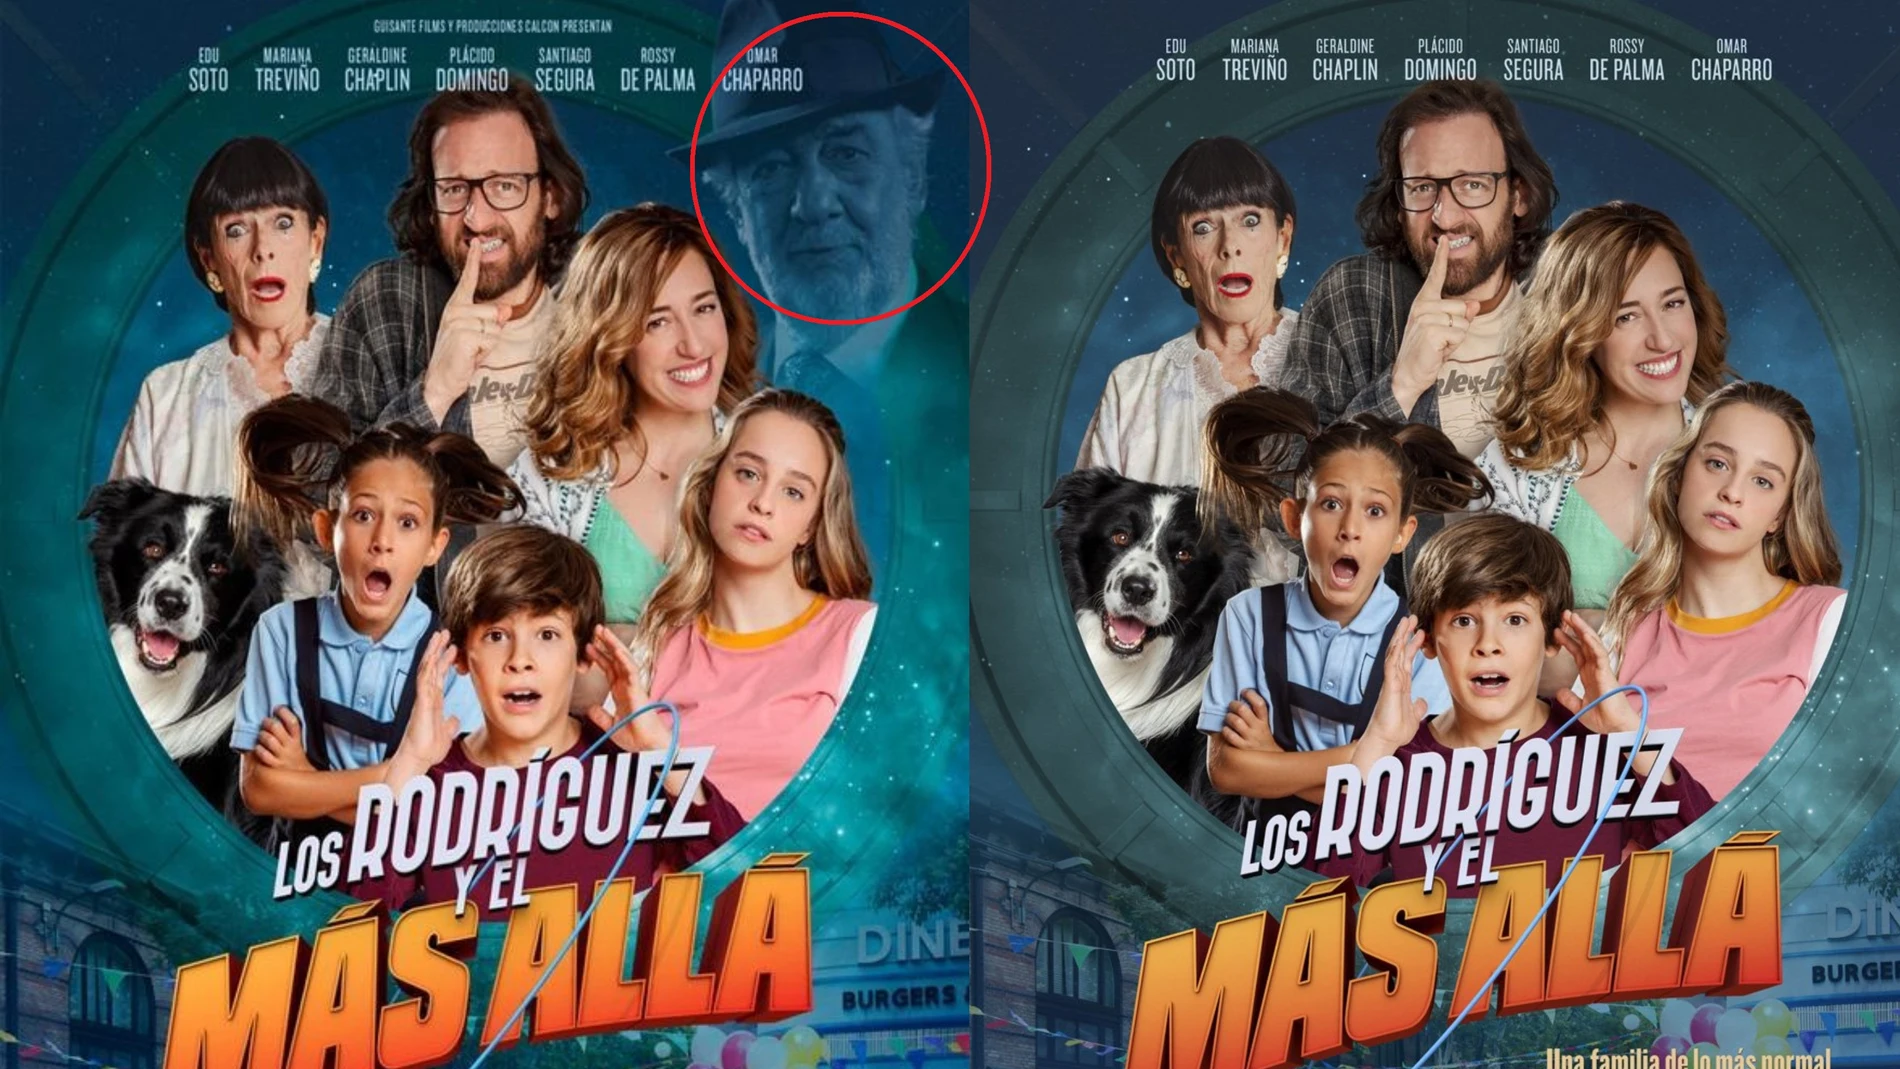 El cartel original de la película, y el cartel sin Plácido Domingo